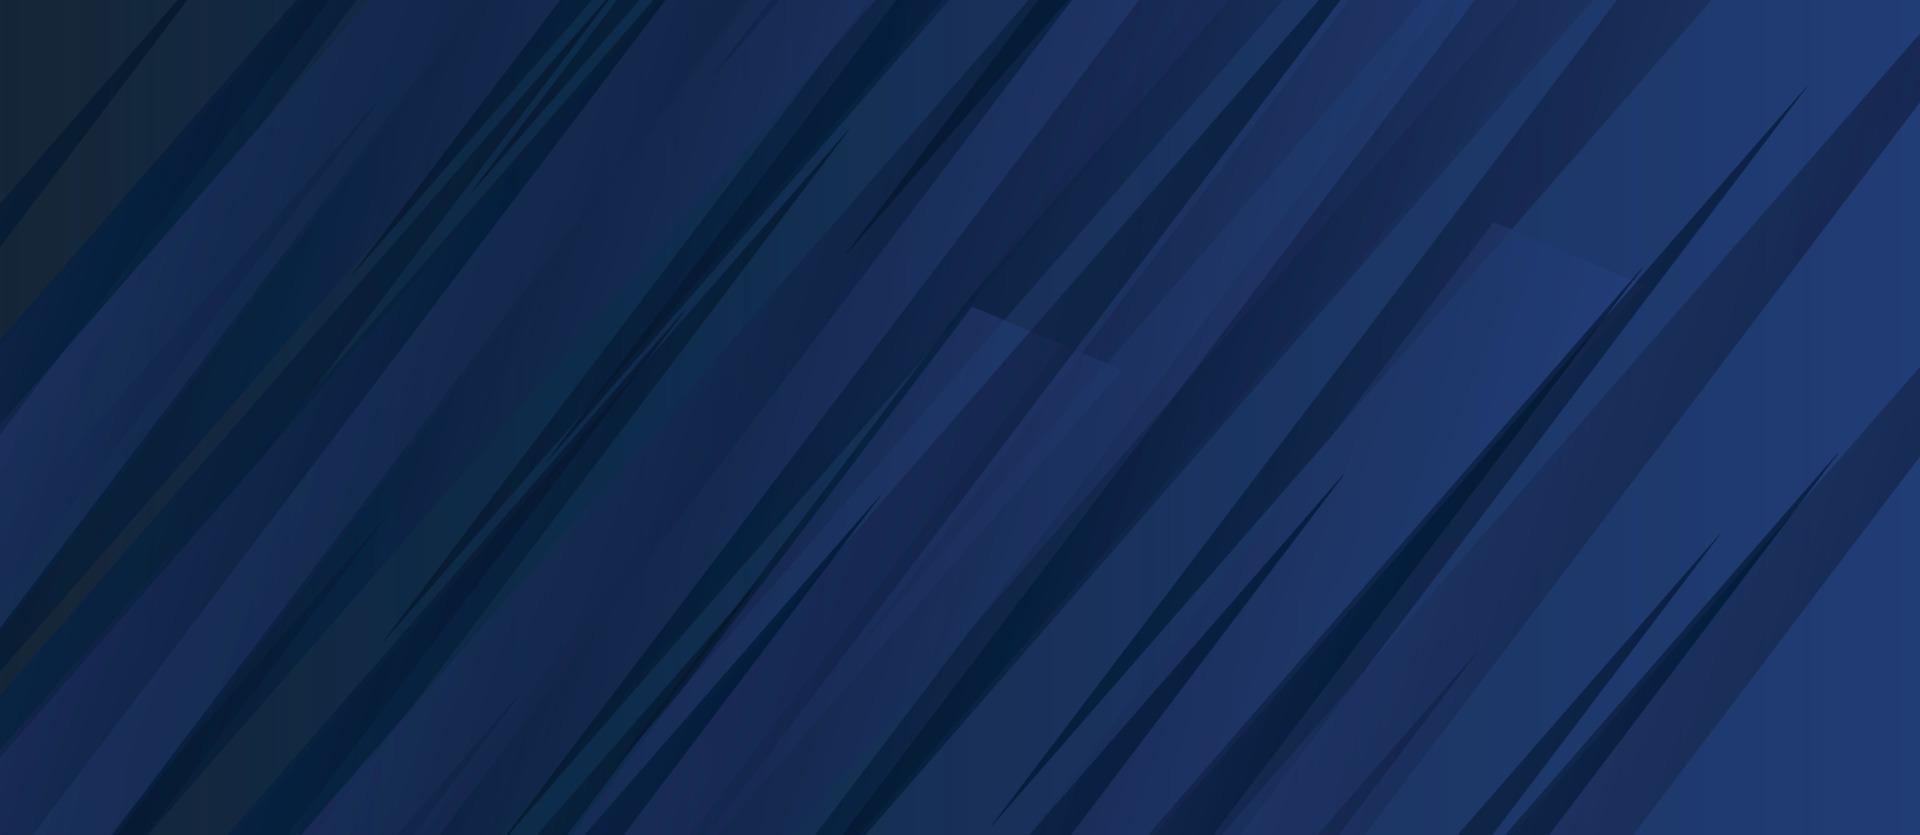 forma cuadrada azul abstracta con fondo de concepto futurista. elemento de diseño y fondo geométrico abstracto. fondo abstracto de tecnología de geometría de línea diagonal vector